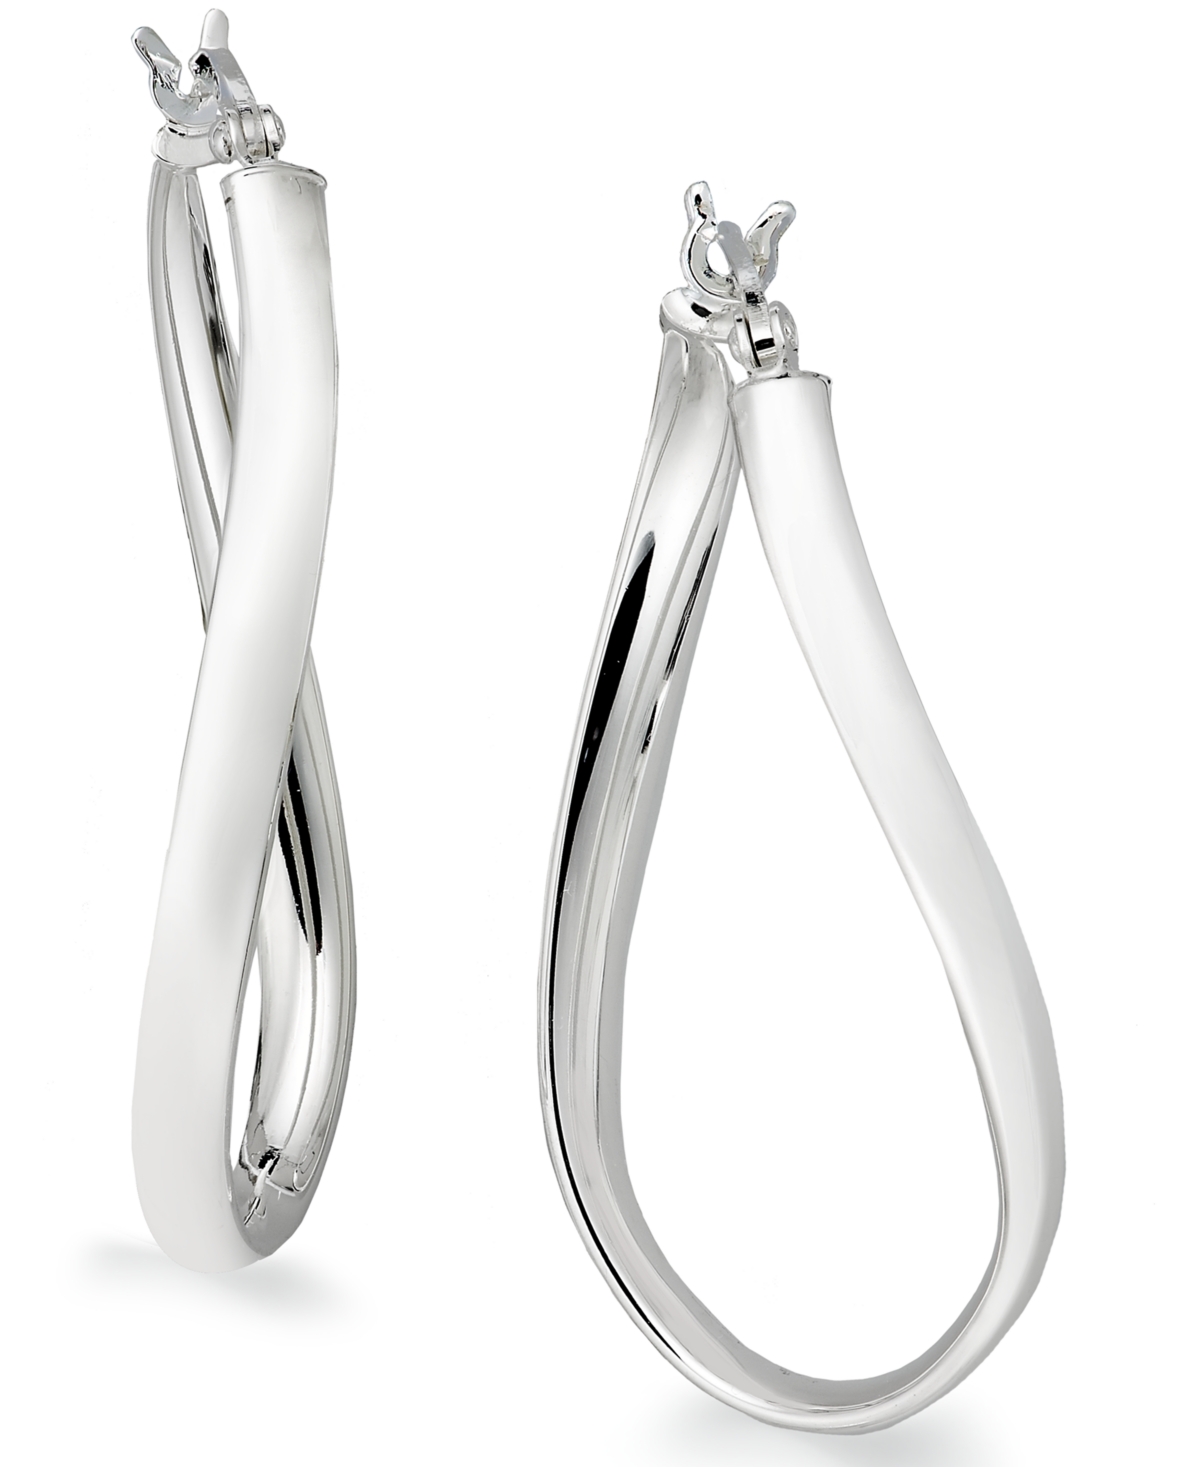 Large Sterling Silver Wave Hoop Earrings, 1.5" - Silver